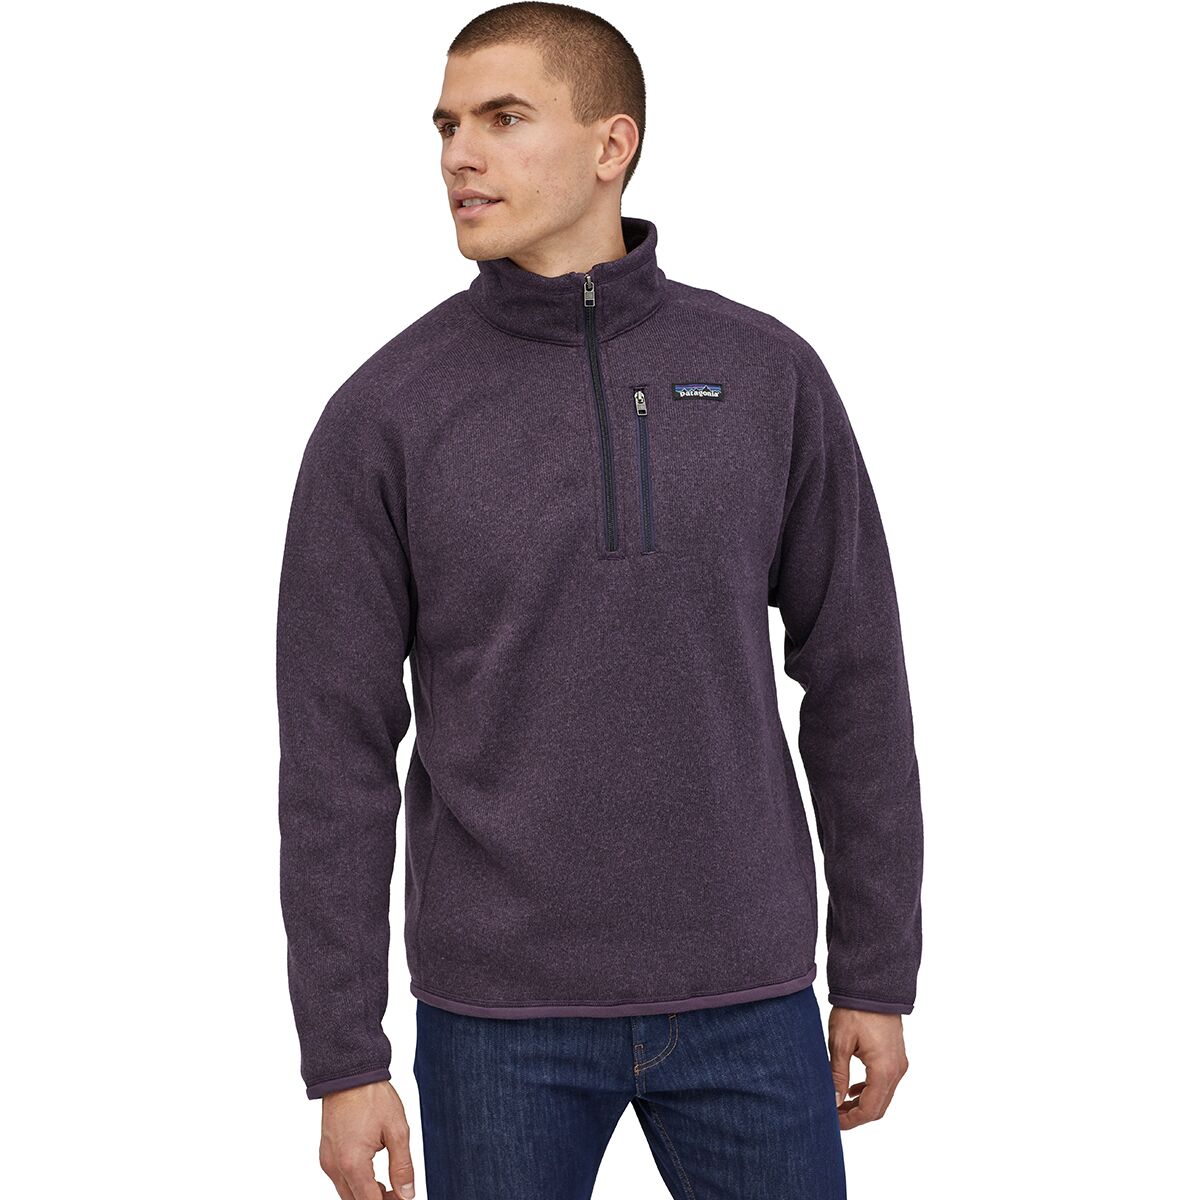 Better Sweater 1/4-Zip Fleece Jacket - Men